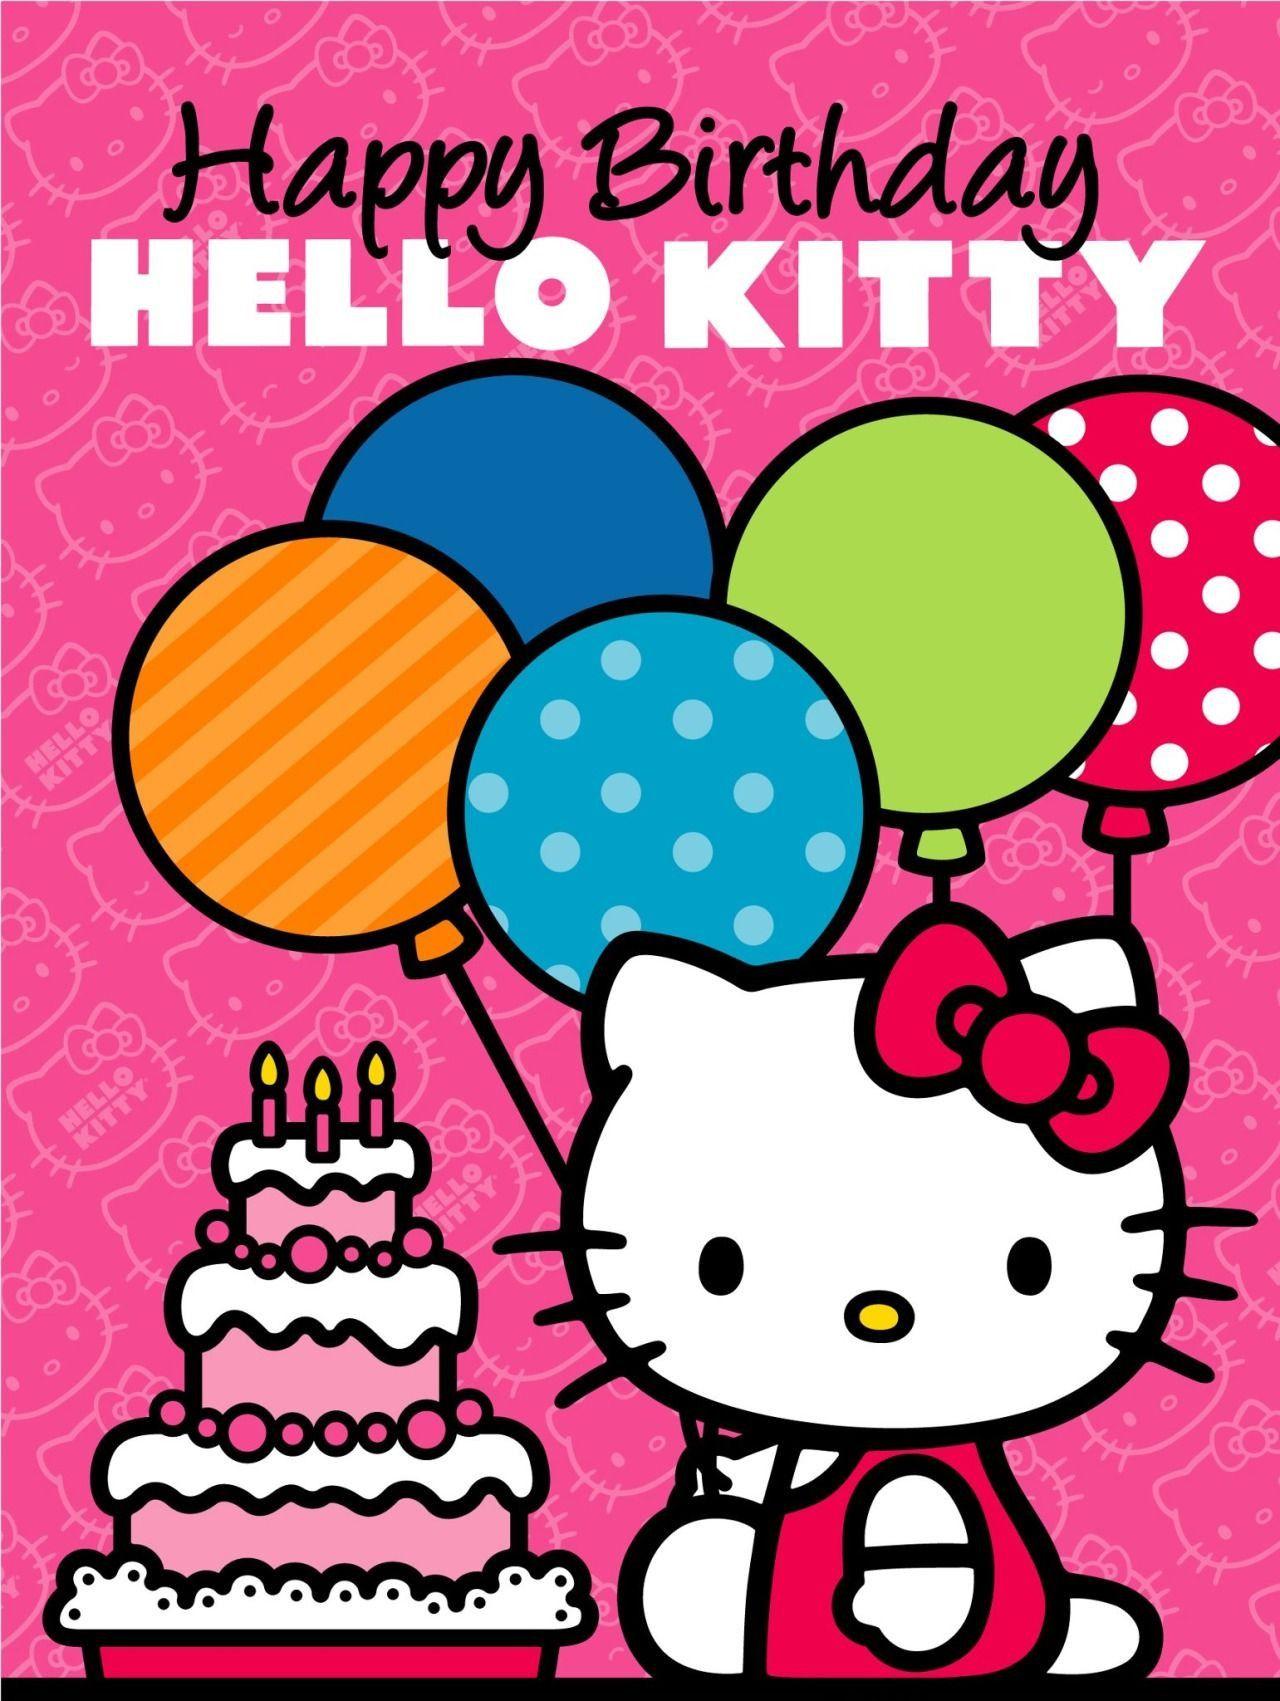 Happy Birthday Hello Kitty Wallpapers - Top Những Hình Ảnh Đẹp